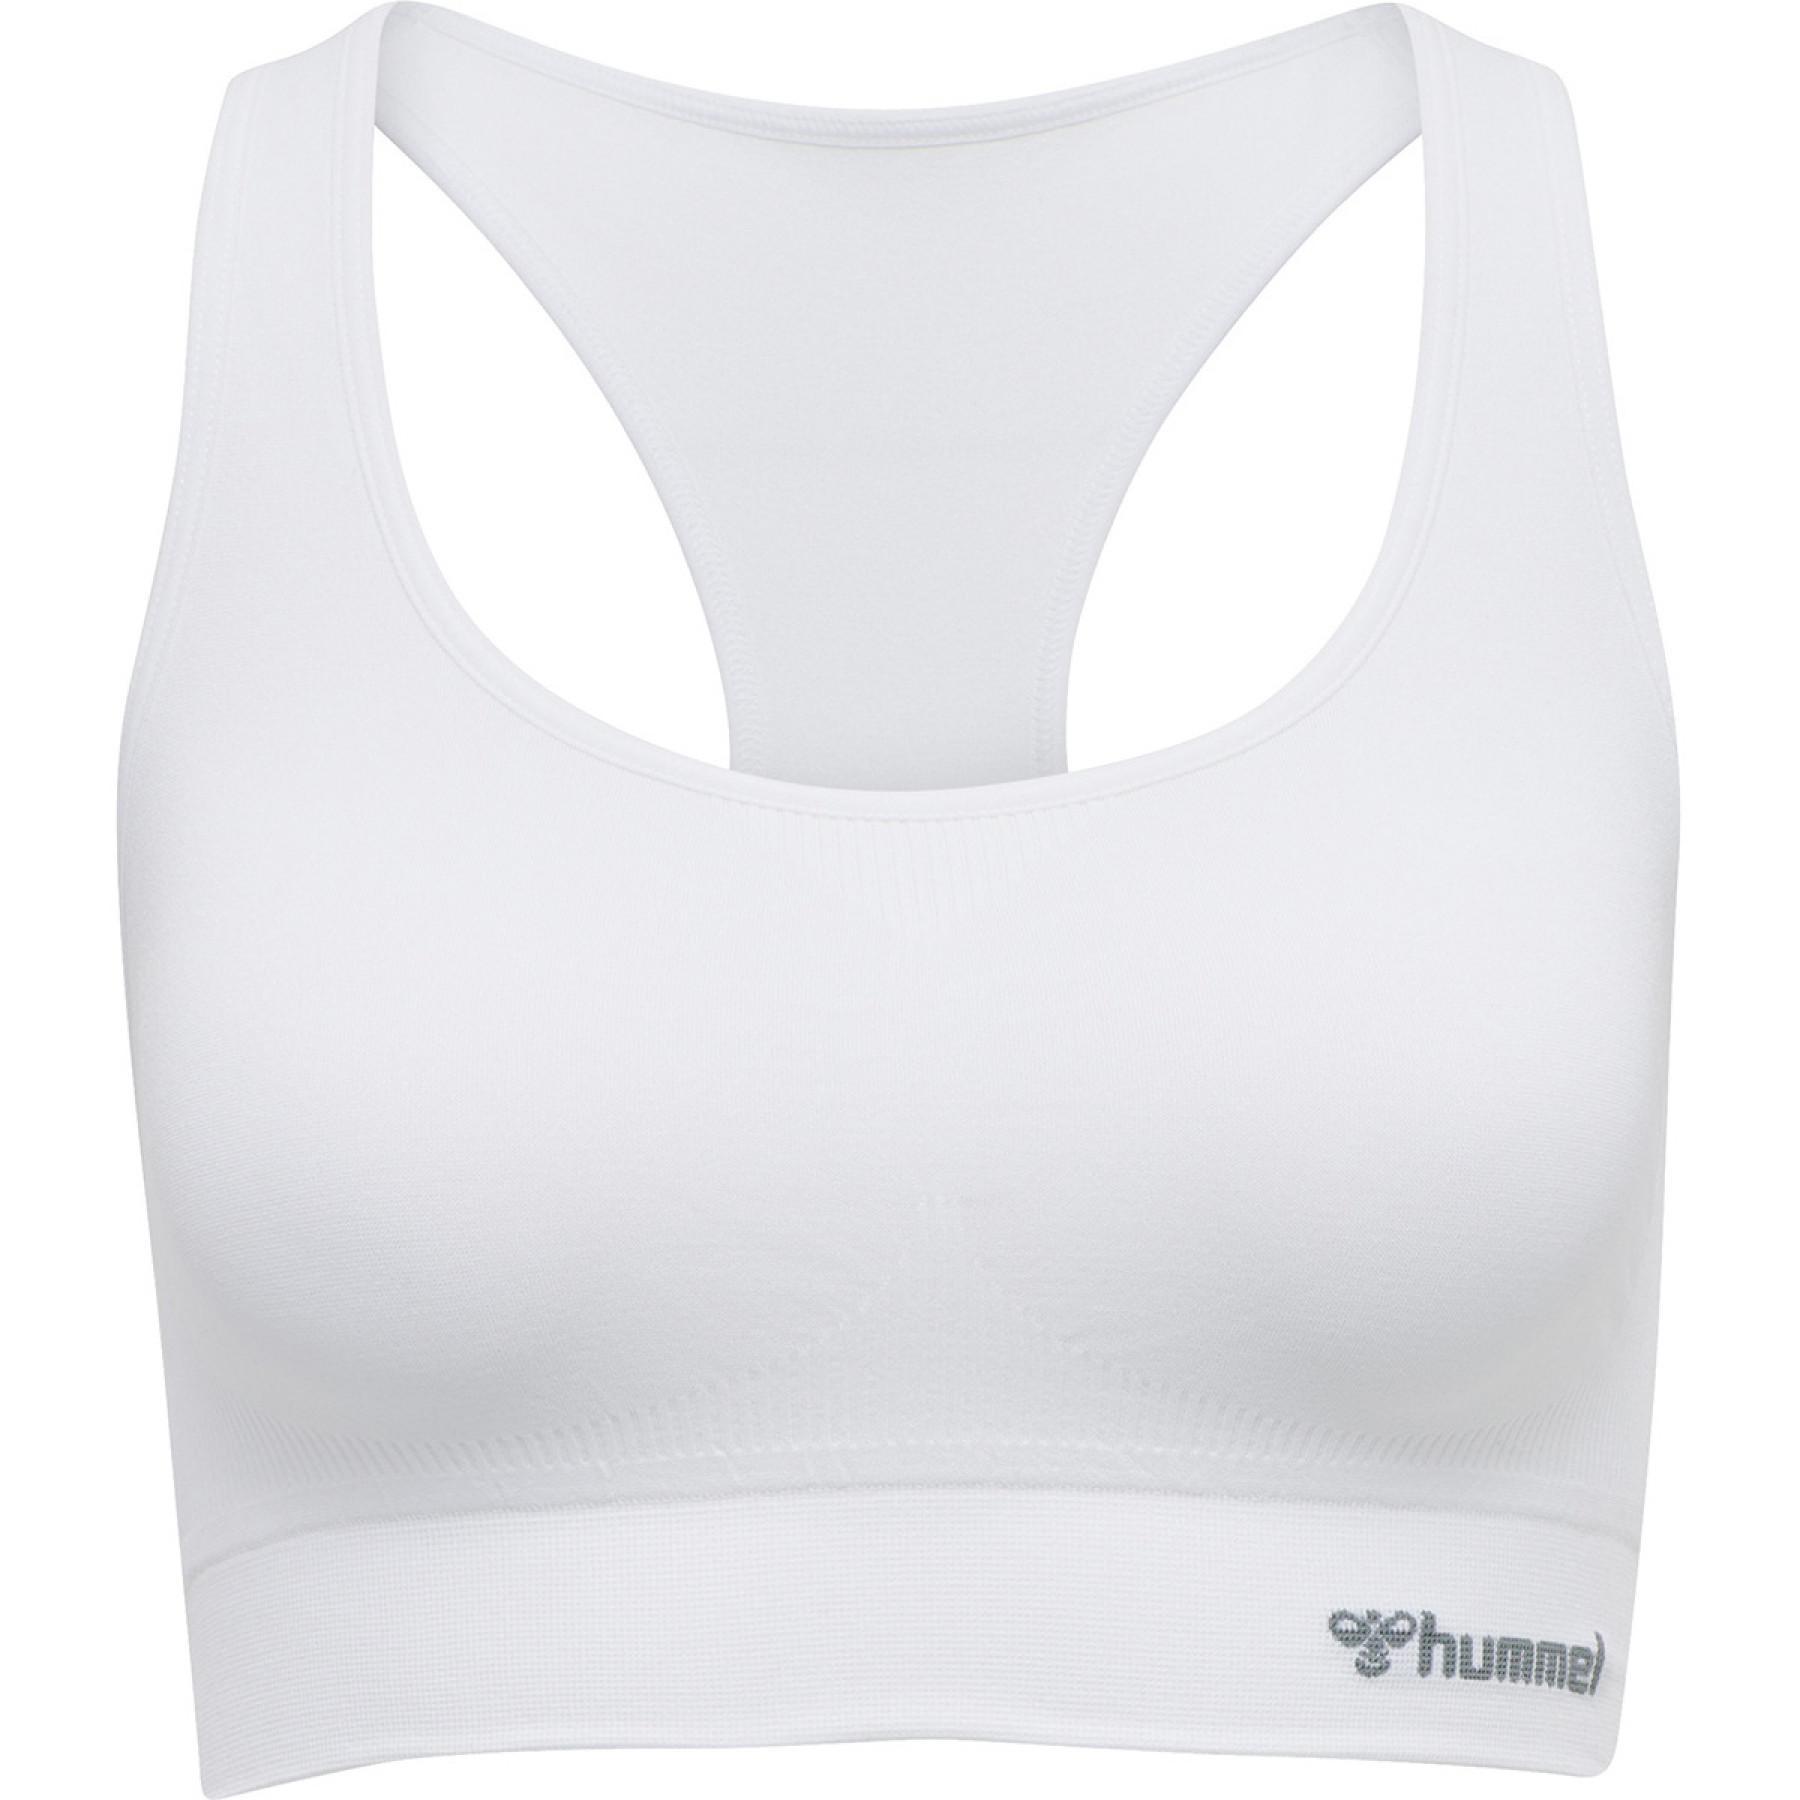 Women's bra Hummel hmltif - Sports bras - Women's wear - Handball wear